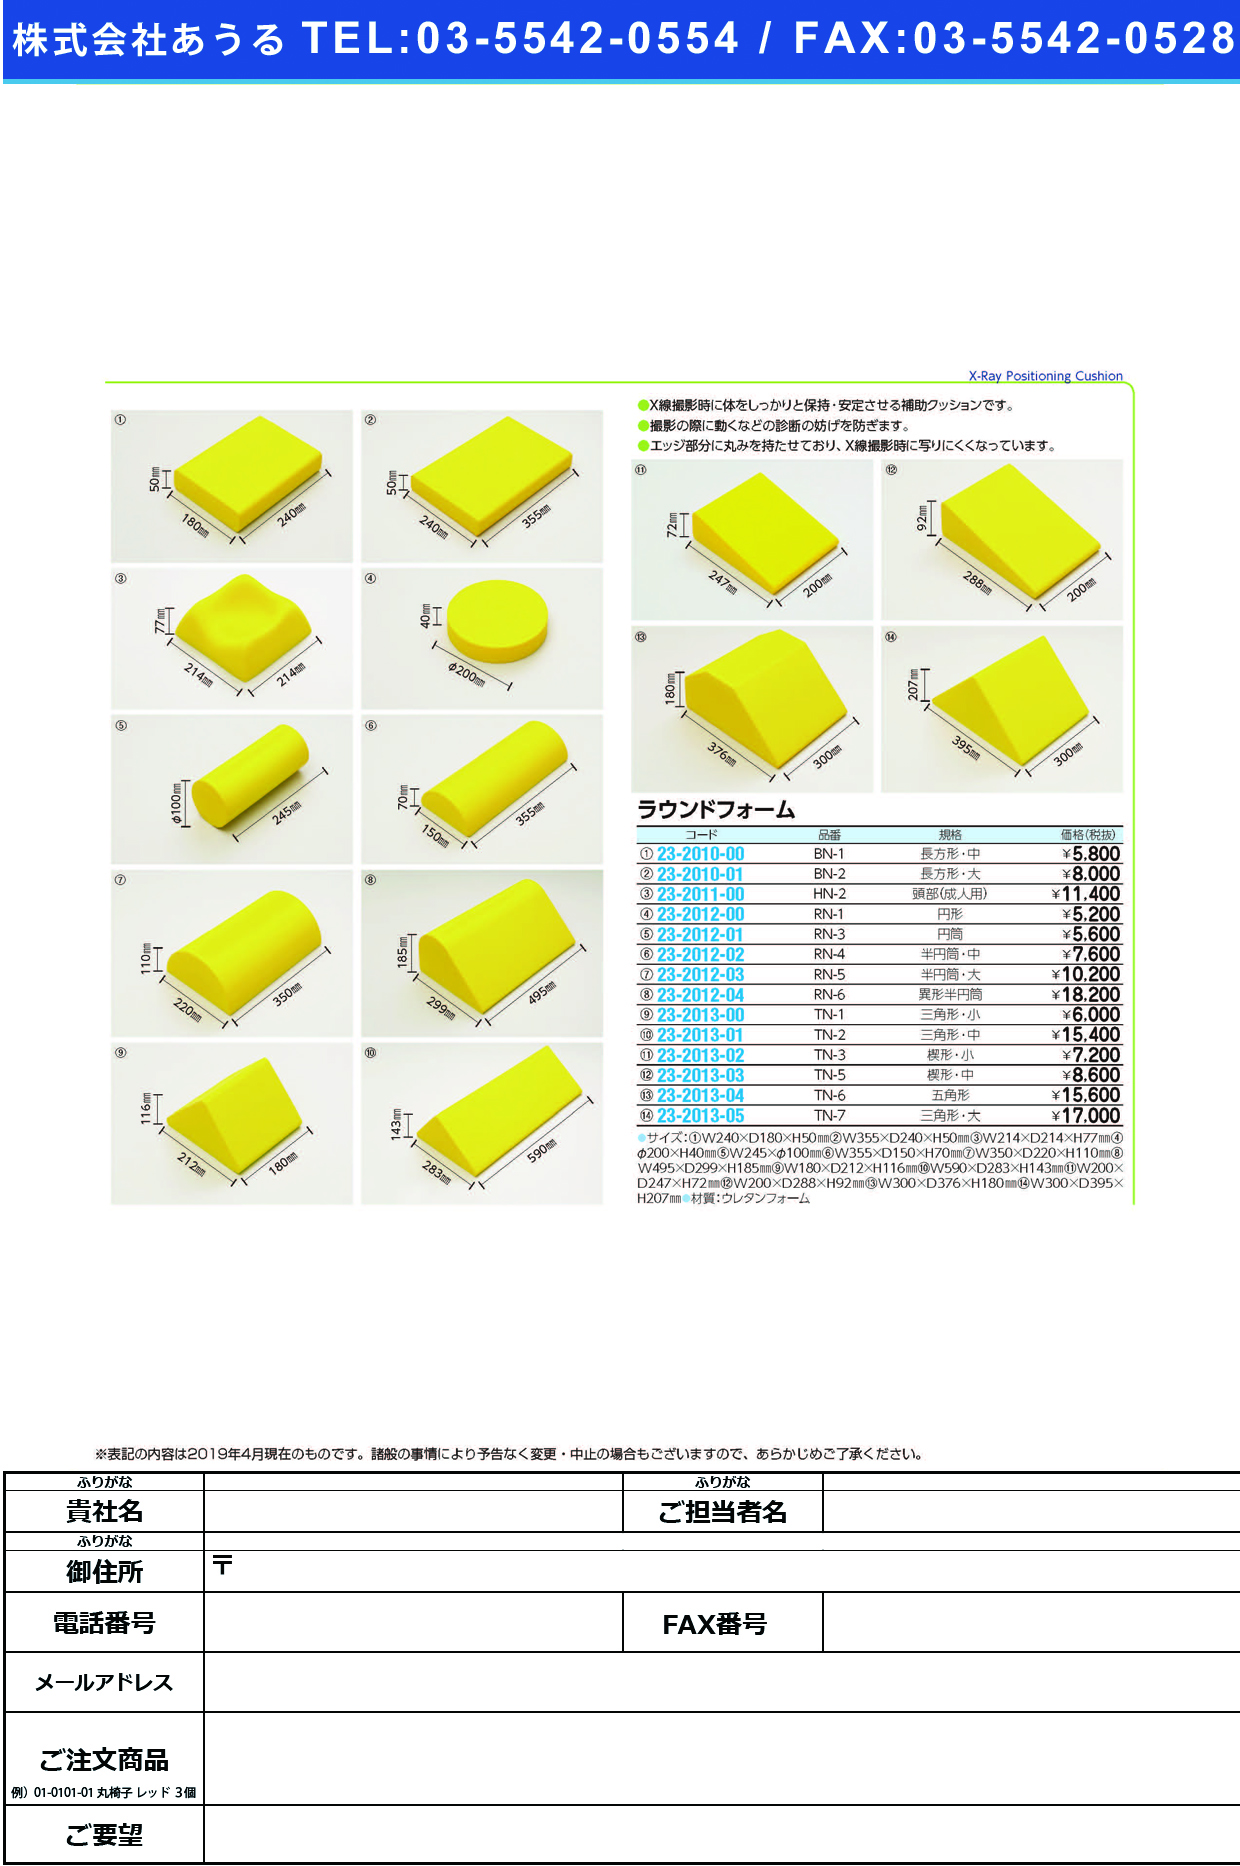 (23-2010-00)ラウンドフォーム（長方形ブロック・中 BN-1 ﾗｳﾝﾄﾞﾌｫｰﾑ(ﾁｮｳﾎｳｹｲﾁｭｳ【1個単位】【2019年カタログ商品】